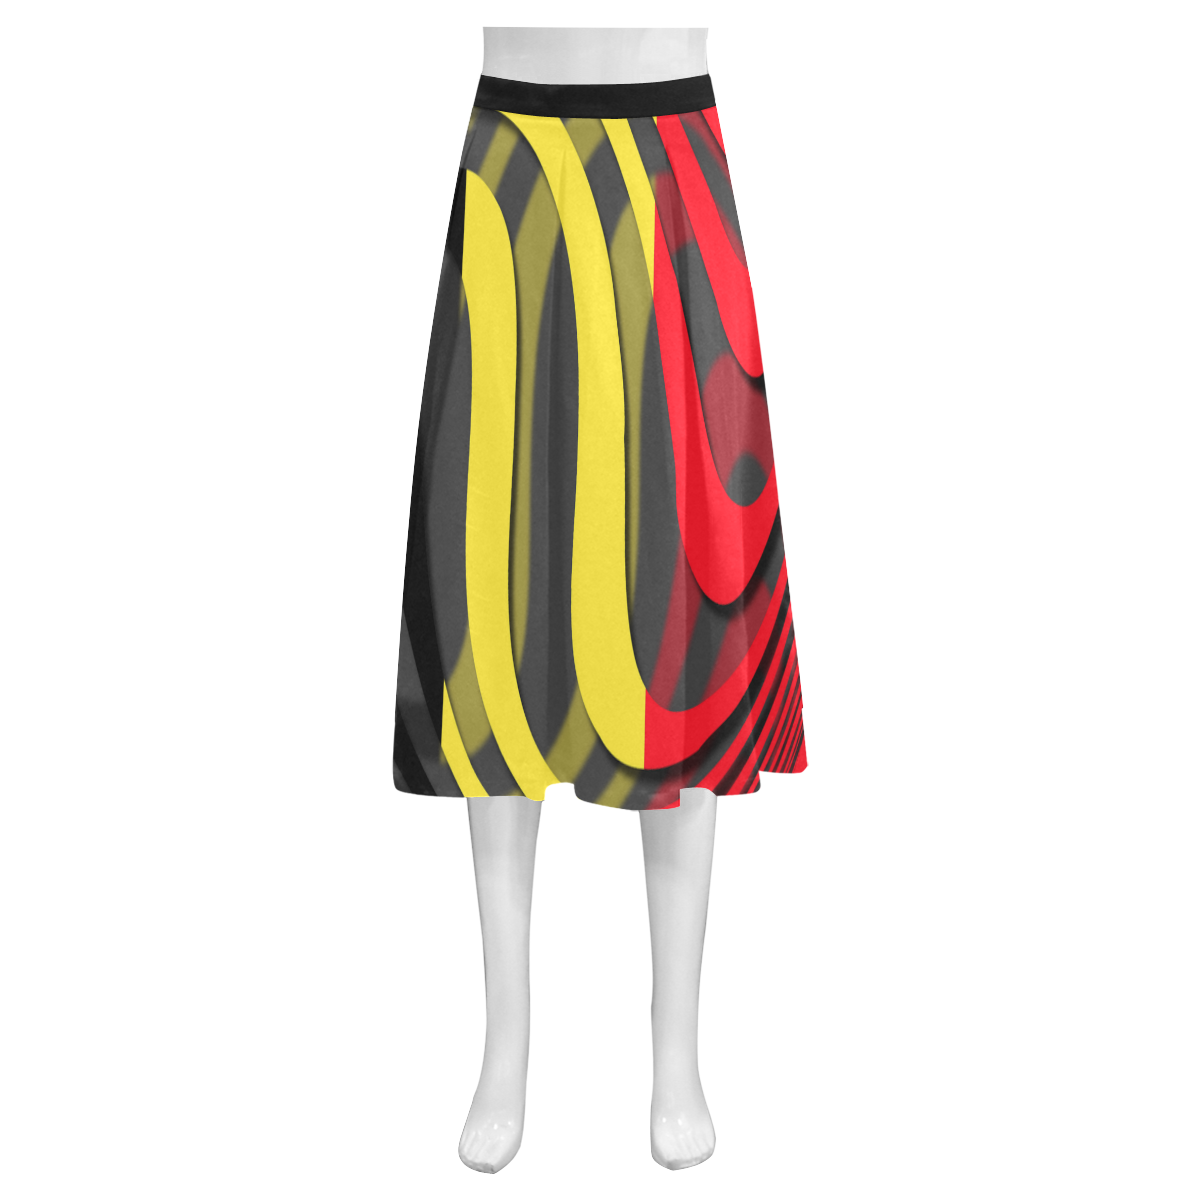 The Flag of Belgium Mnemosyne Women's Crepe Skirt (Model D16)